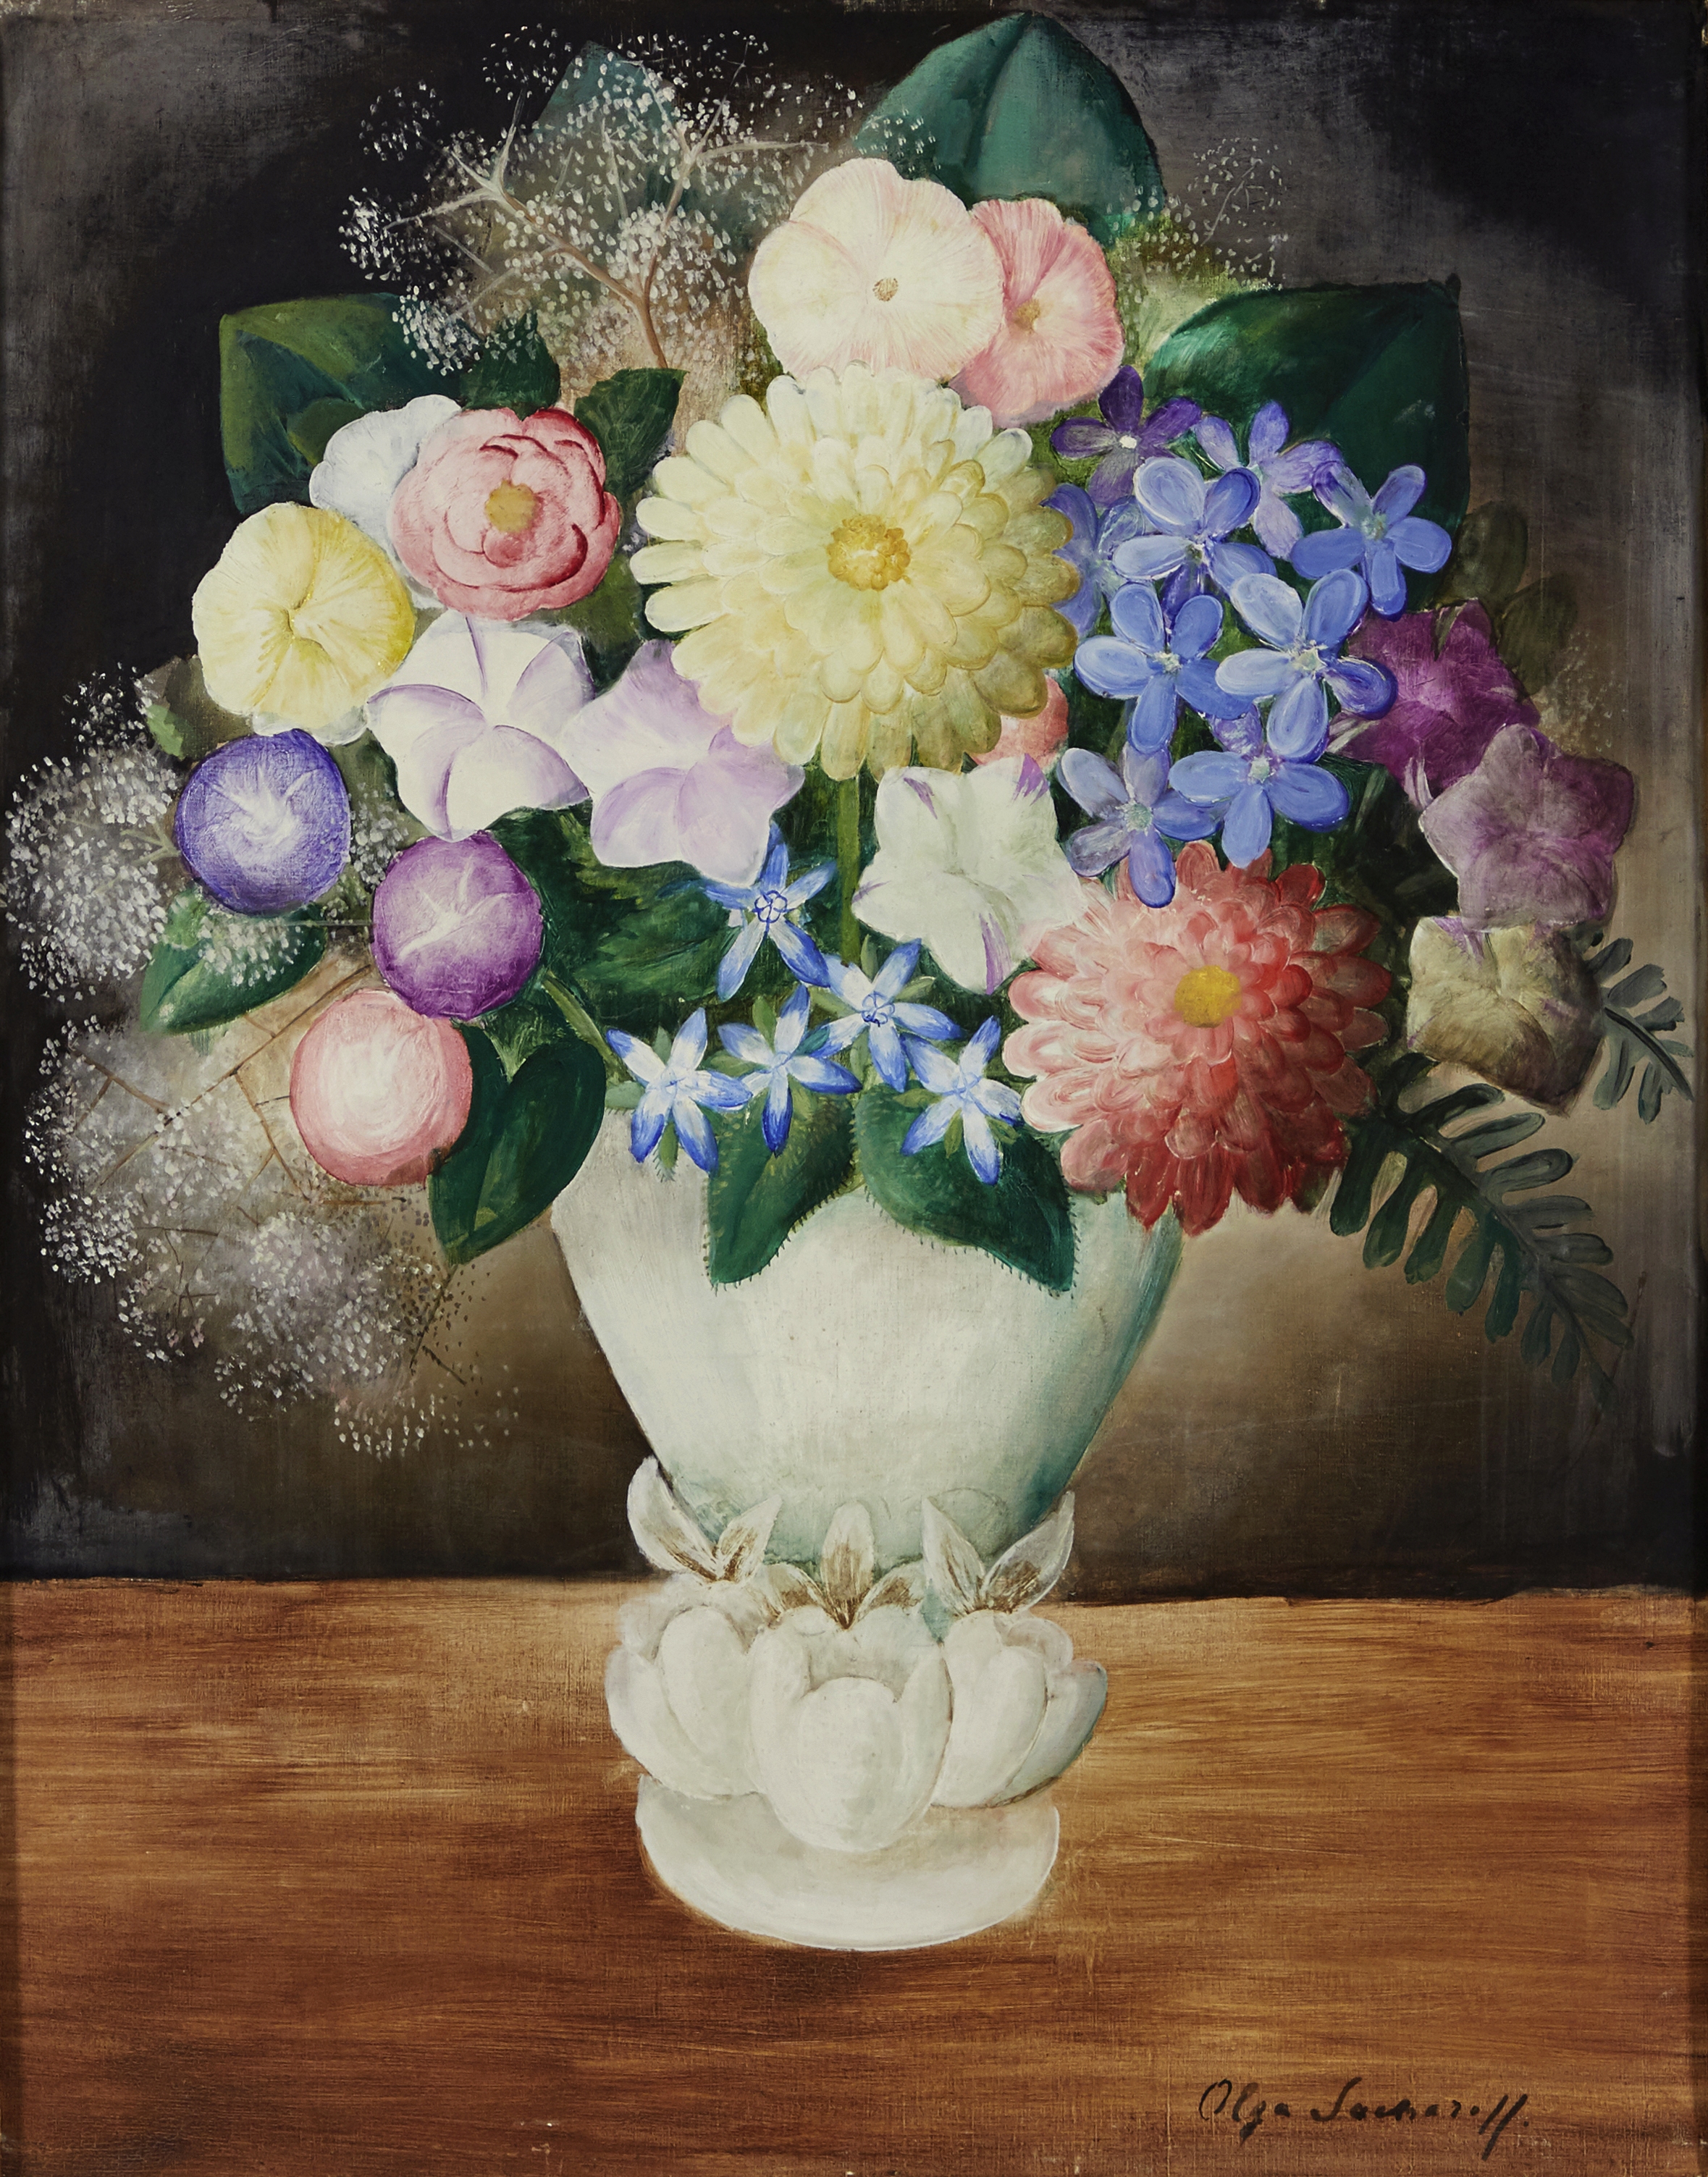 Olga Sacharoff (Russian, 1889-1967) 'Le vase vert' 67.3 x 54.5cm (26 1/2 x 21 1/2in).